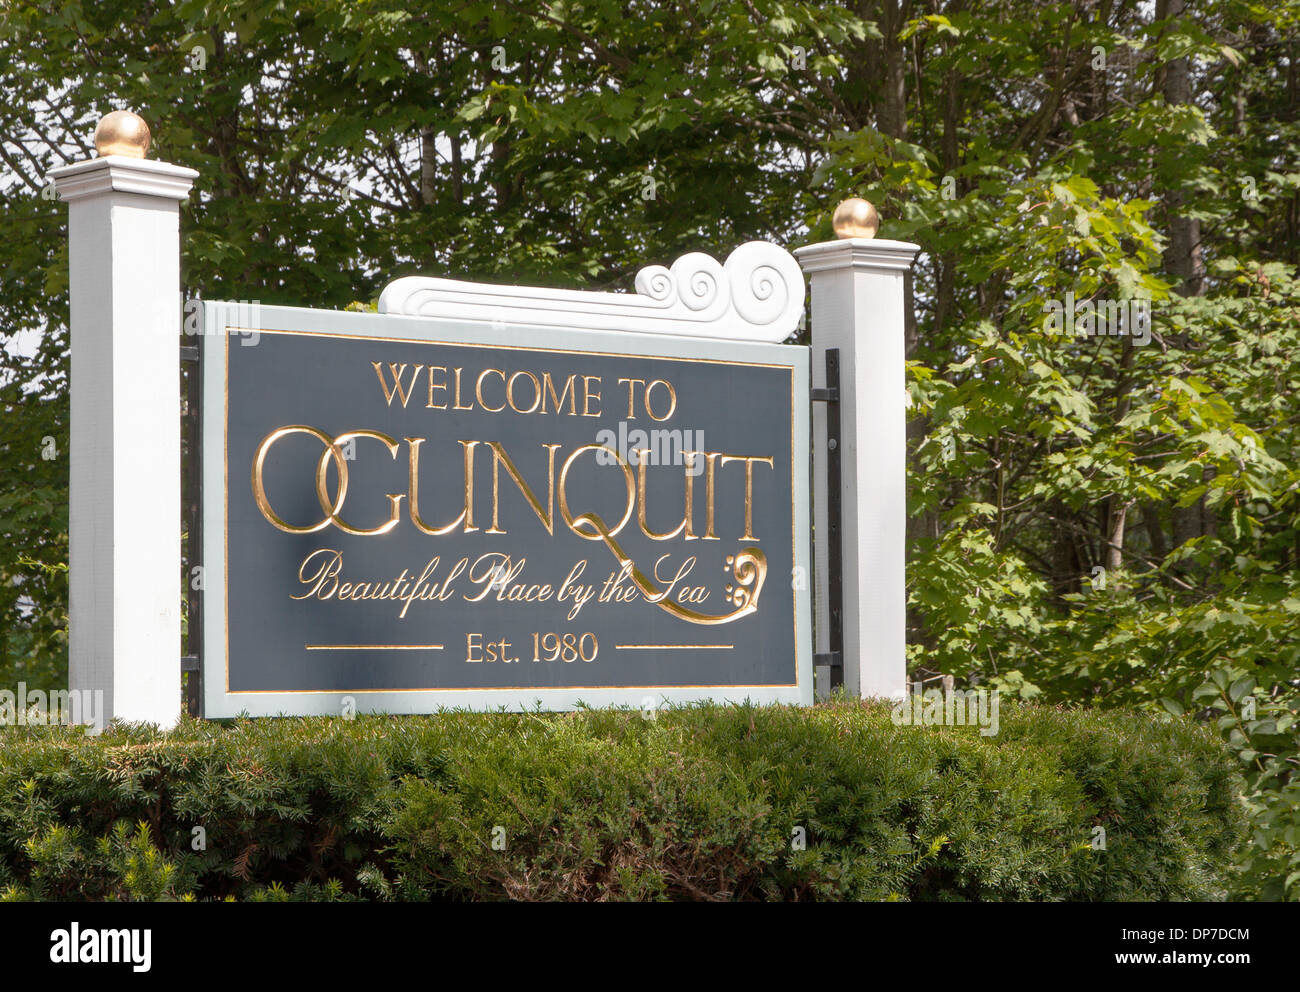 Willkommen in Ogunquit Maine unterzeichnen. In der Native American Abenaki Native American Language, Ogunquit bedeutet "schöner Ort am Meer. Stockfoto